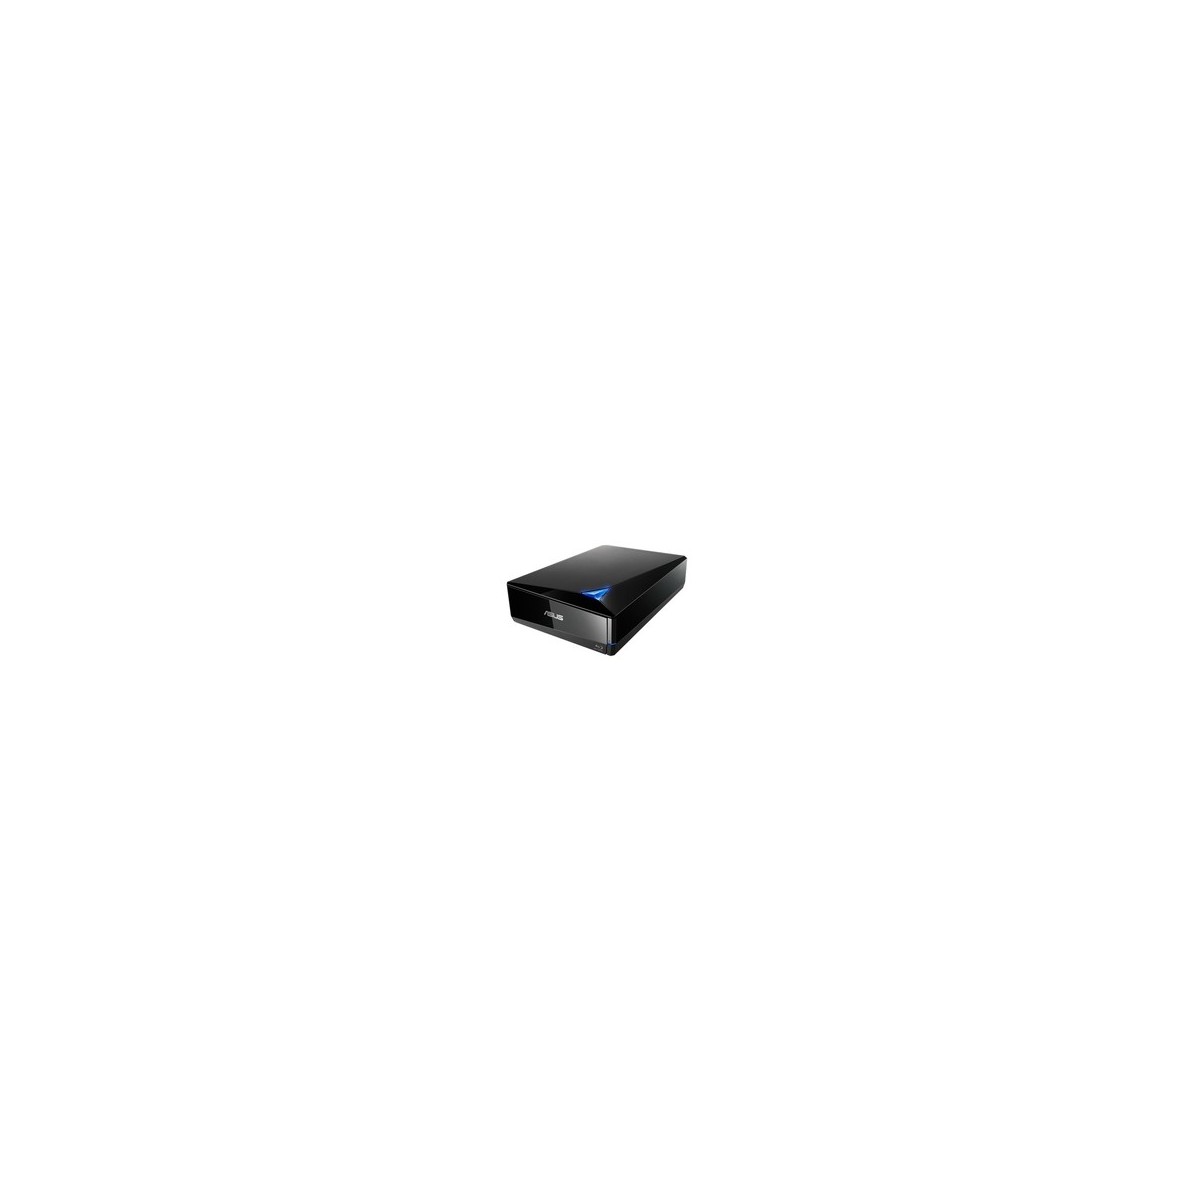 ASUS BW-16D1X-U - Black - Desktop-Notebook - Blu-Ray RW - USB 3.2 Gen 1 (3.1 Gen 1) - 16x - 16x